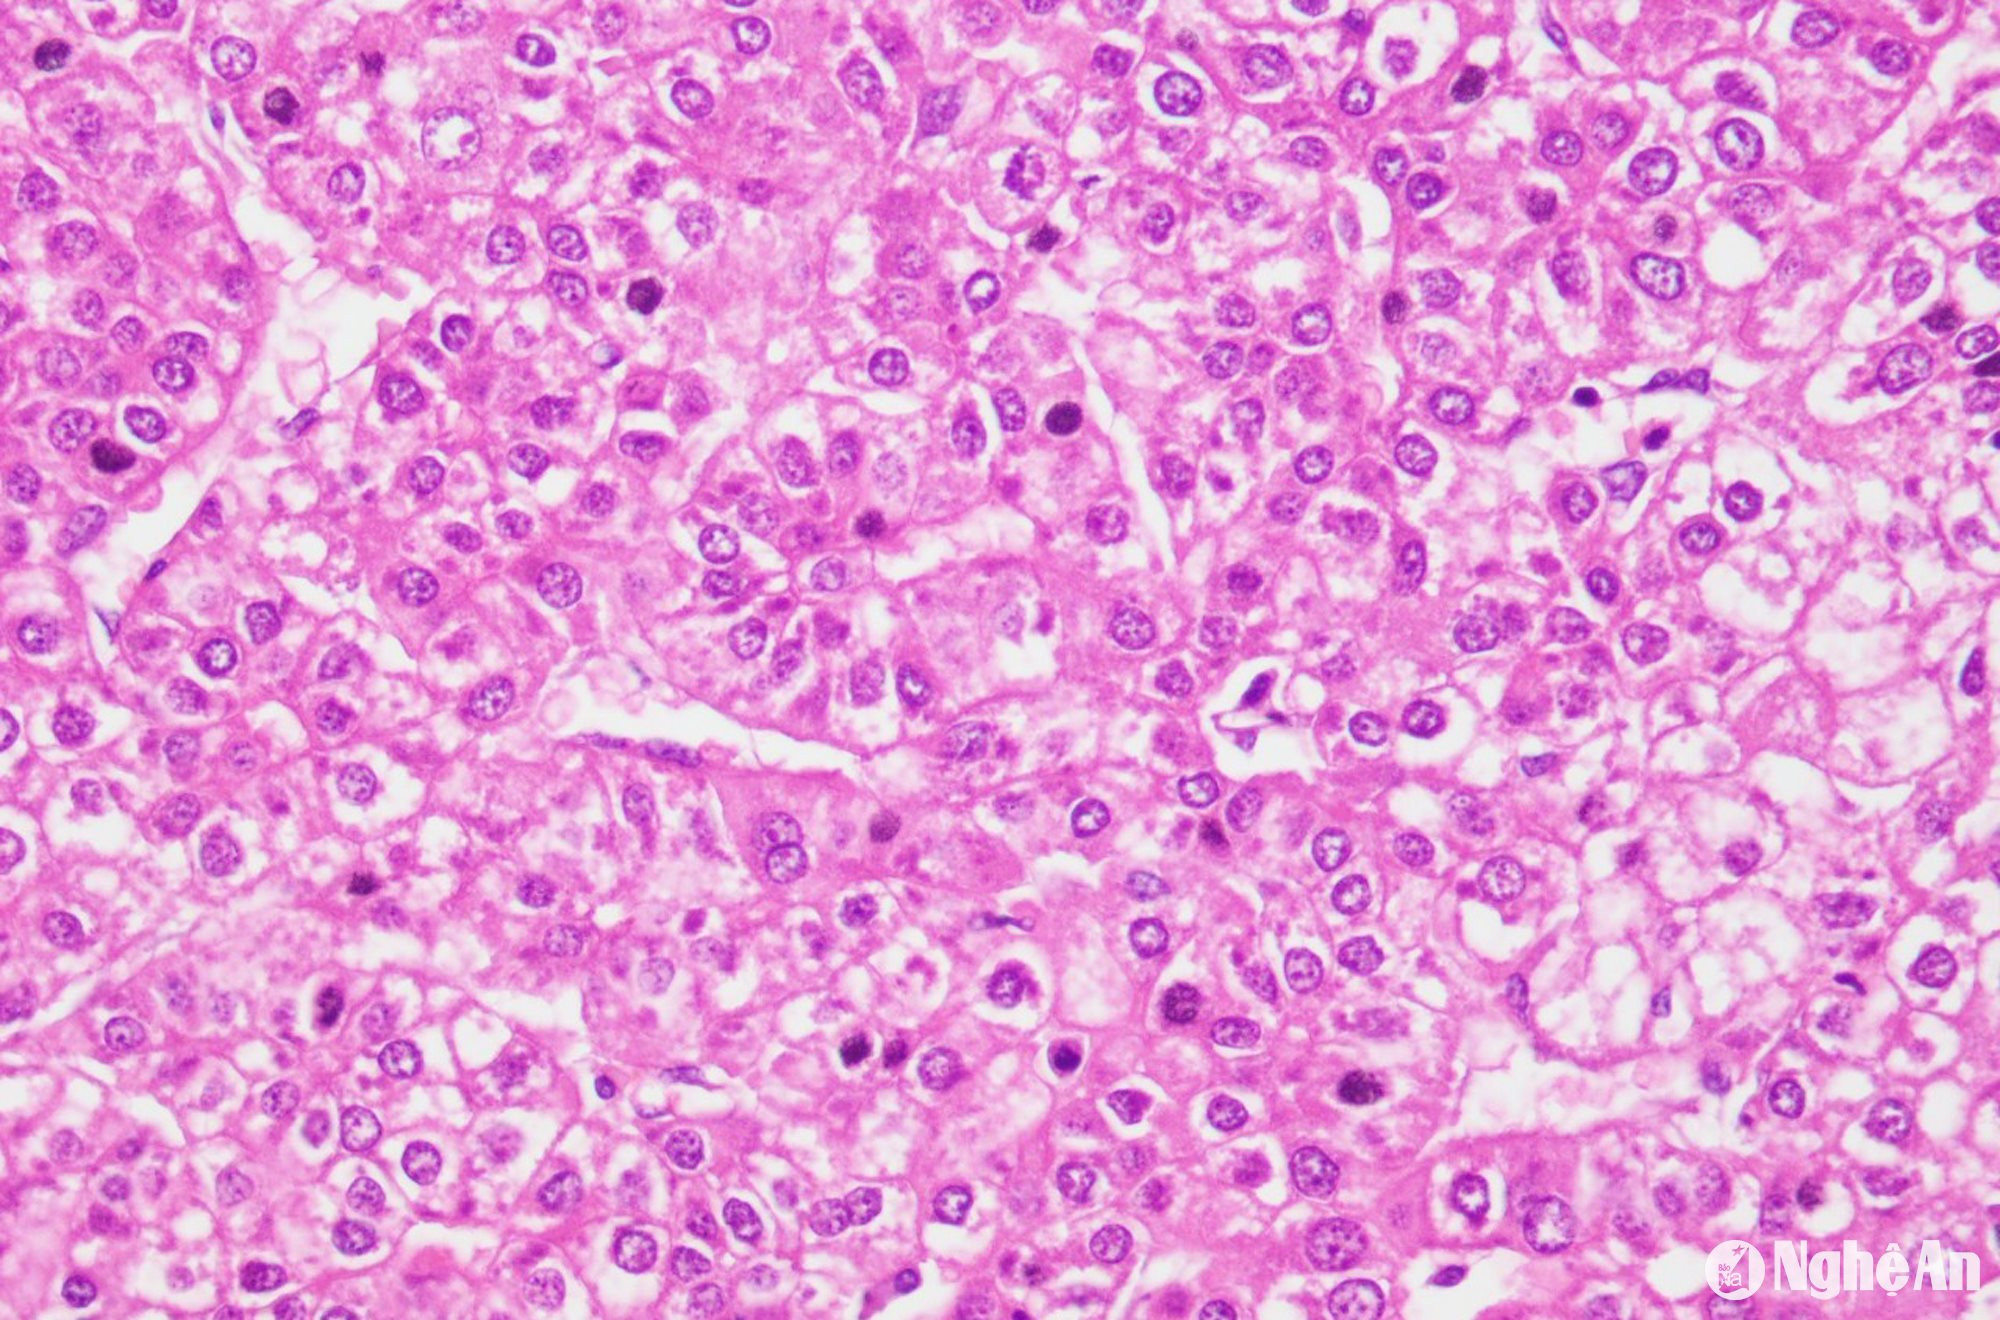 Hình ảnh vi phẫu ung thư tế bào gan của bệnh nhân.Ảnh BVHNĐKNA